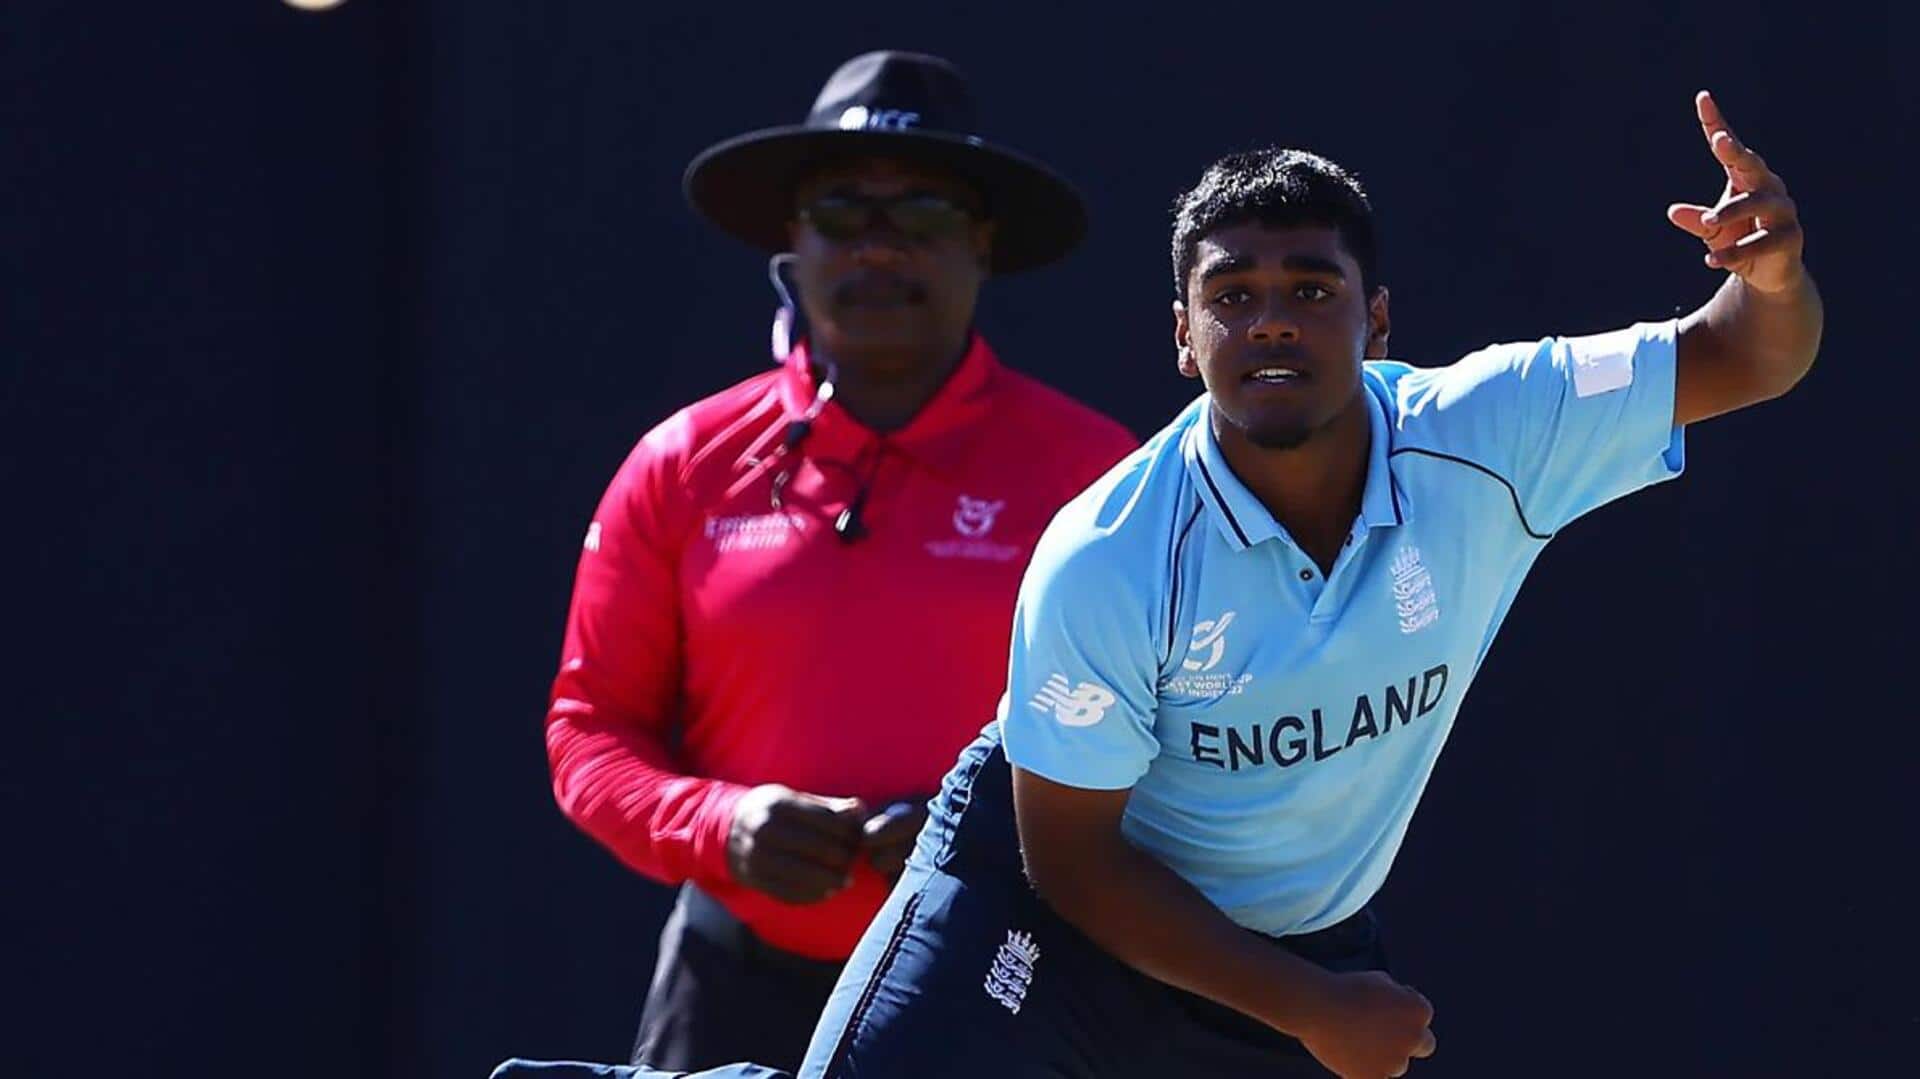 इंग्लैंड बनाम आयरलैंड: रेहान अहमद ने किया अपना सर्वश्रेष्ठ प्रदर्शन, चटकाए 4 विकेट